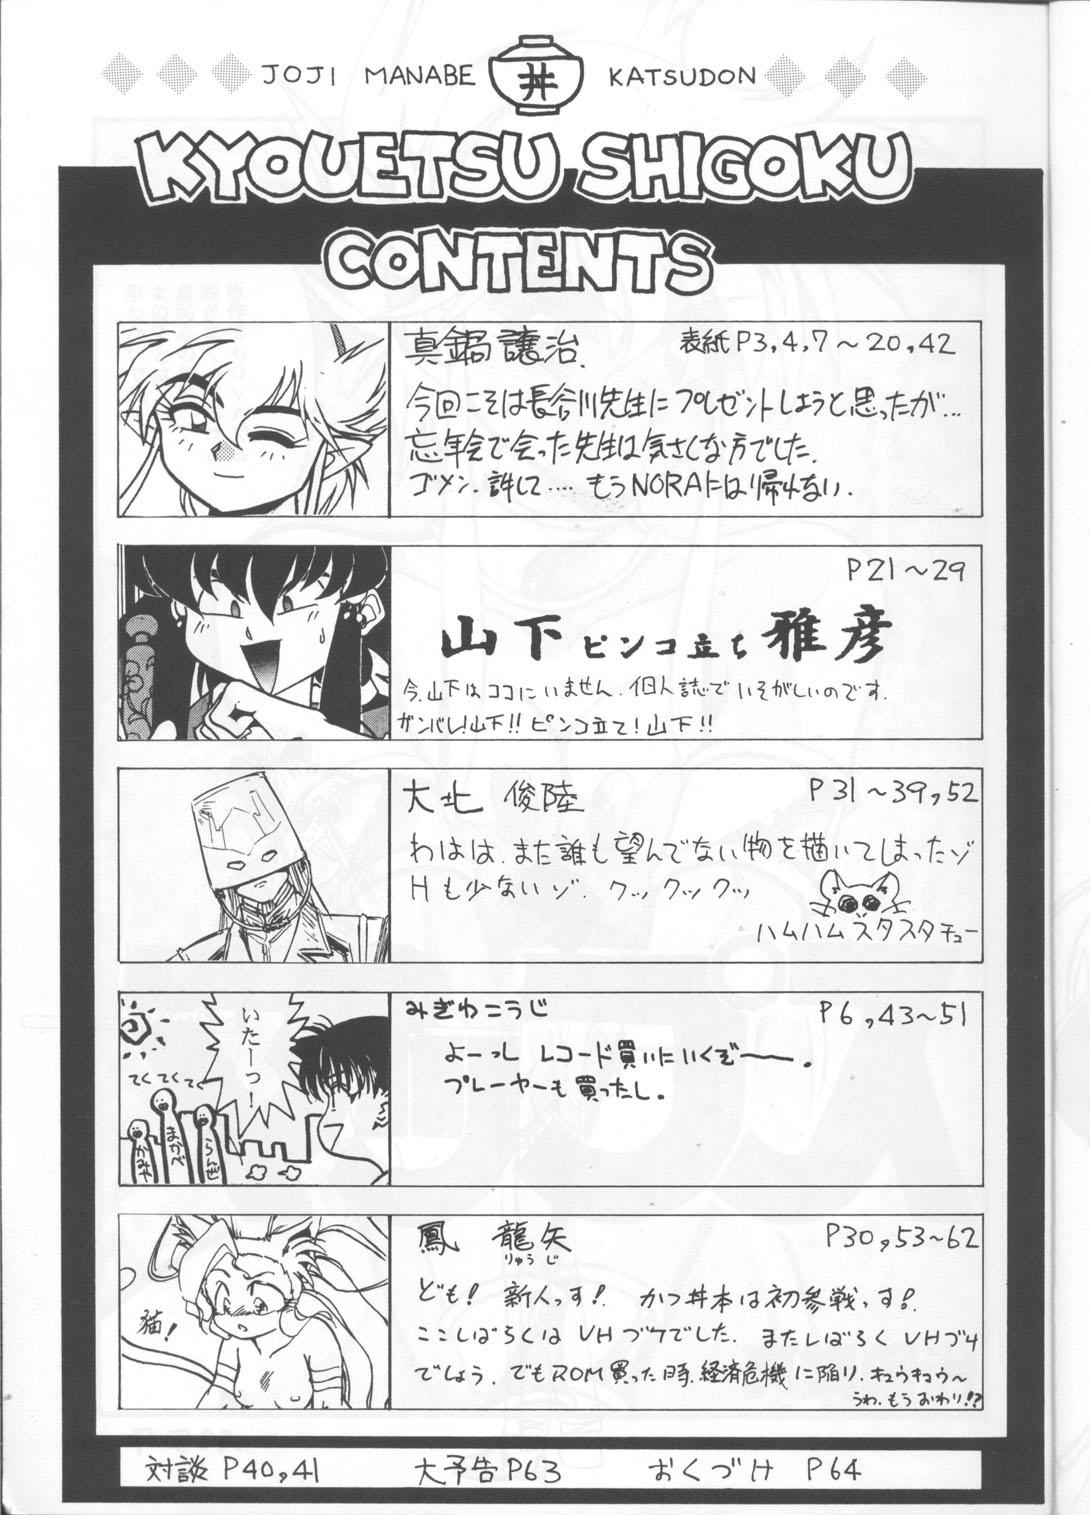 Bigbutt Kyouetsu Shigoku - Darkstalkers Tenchi muyo Gundam wing Dirty pair flash Armitage iii Tokimeki tonight Maps Passion - Page 4